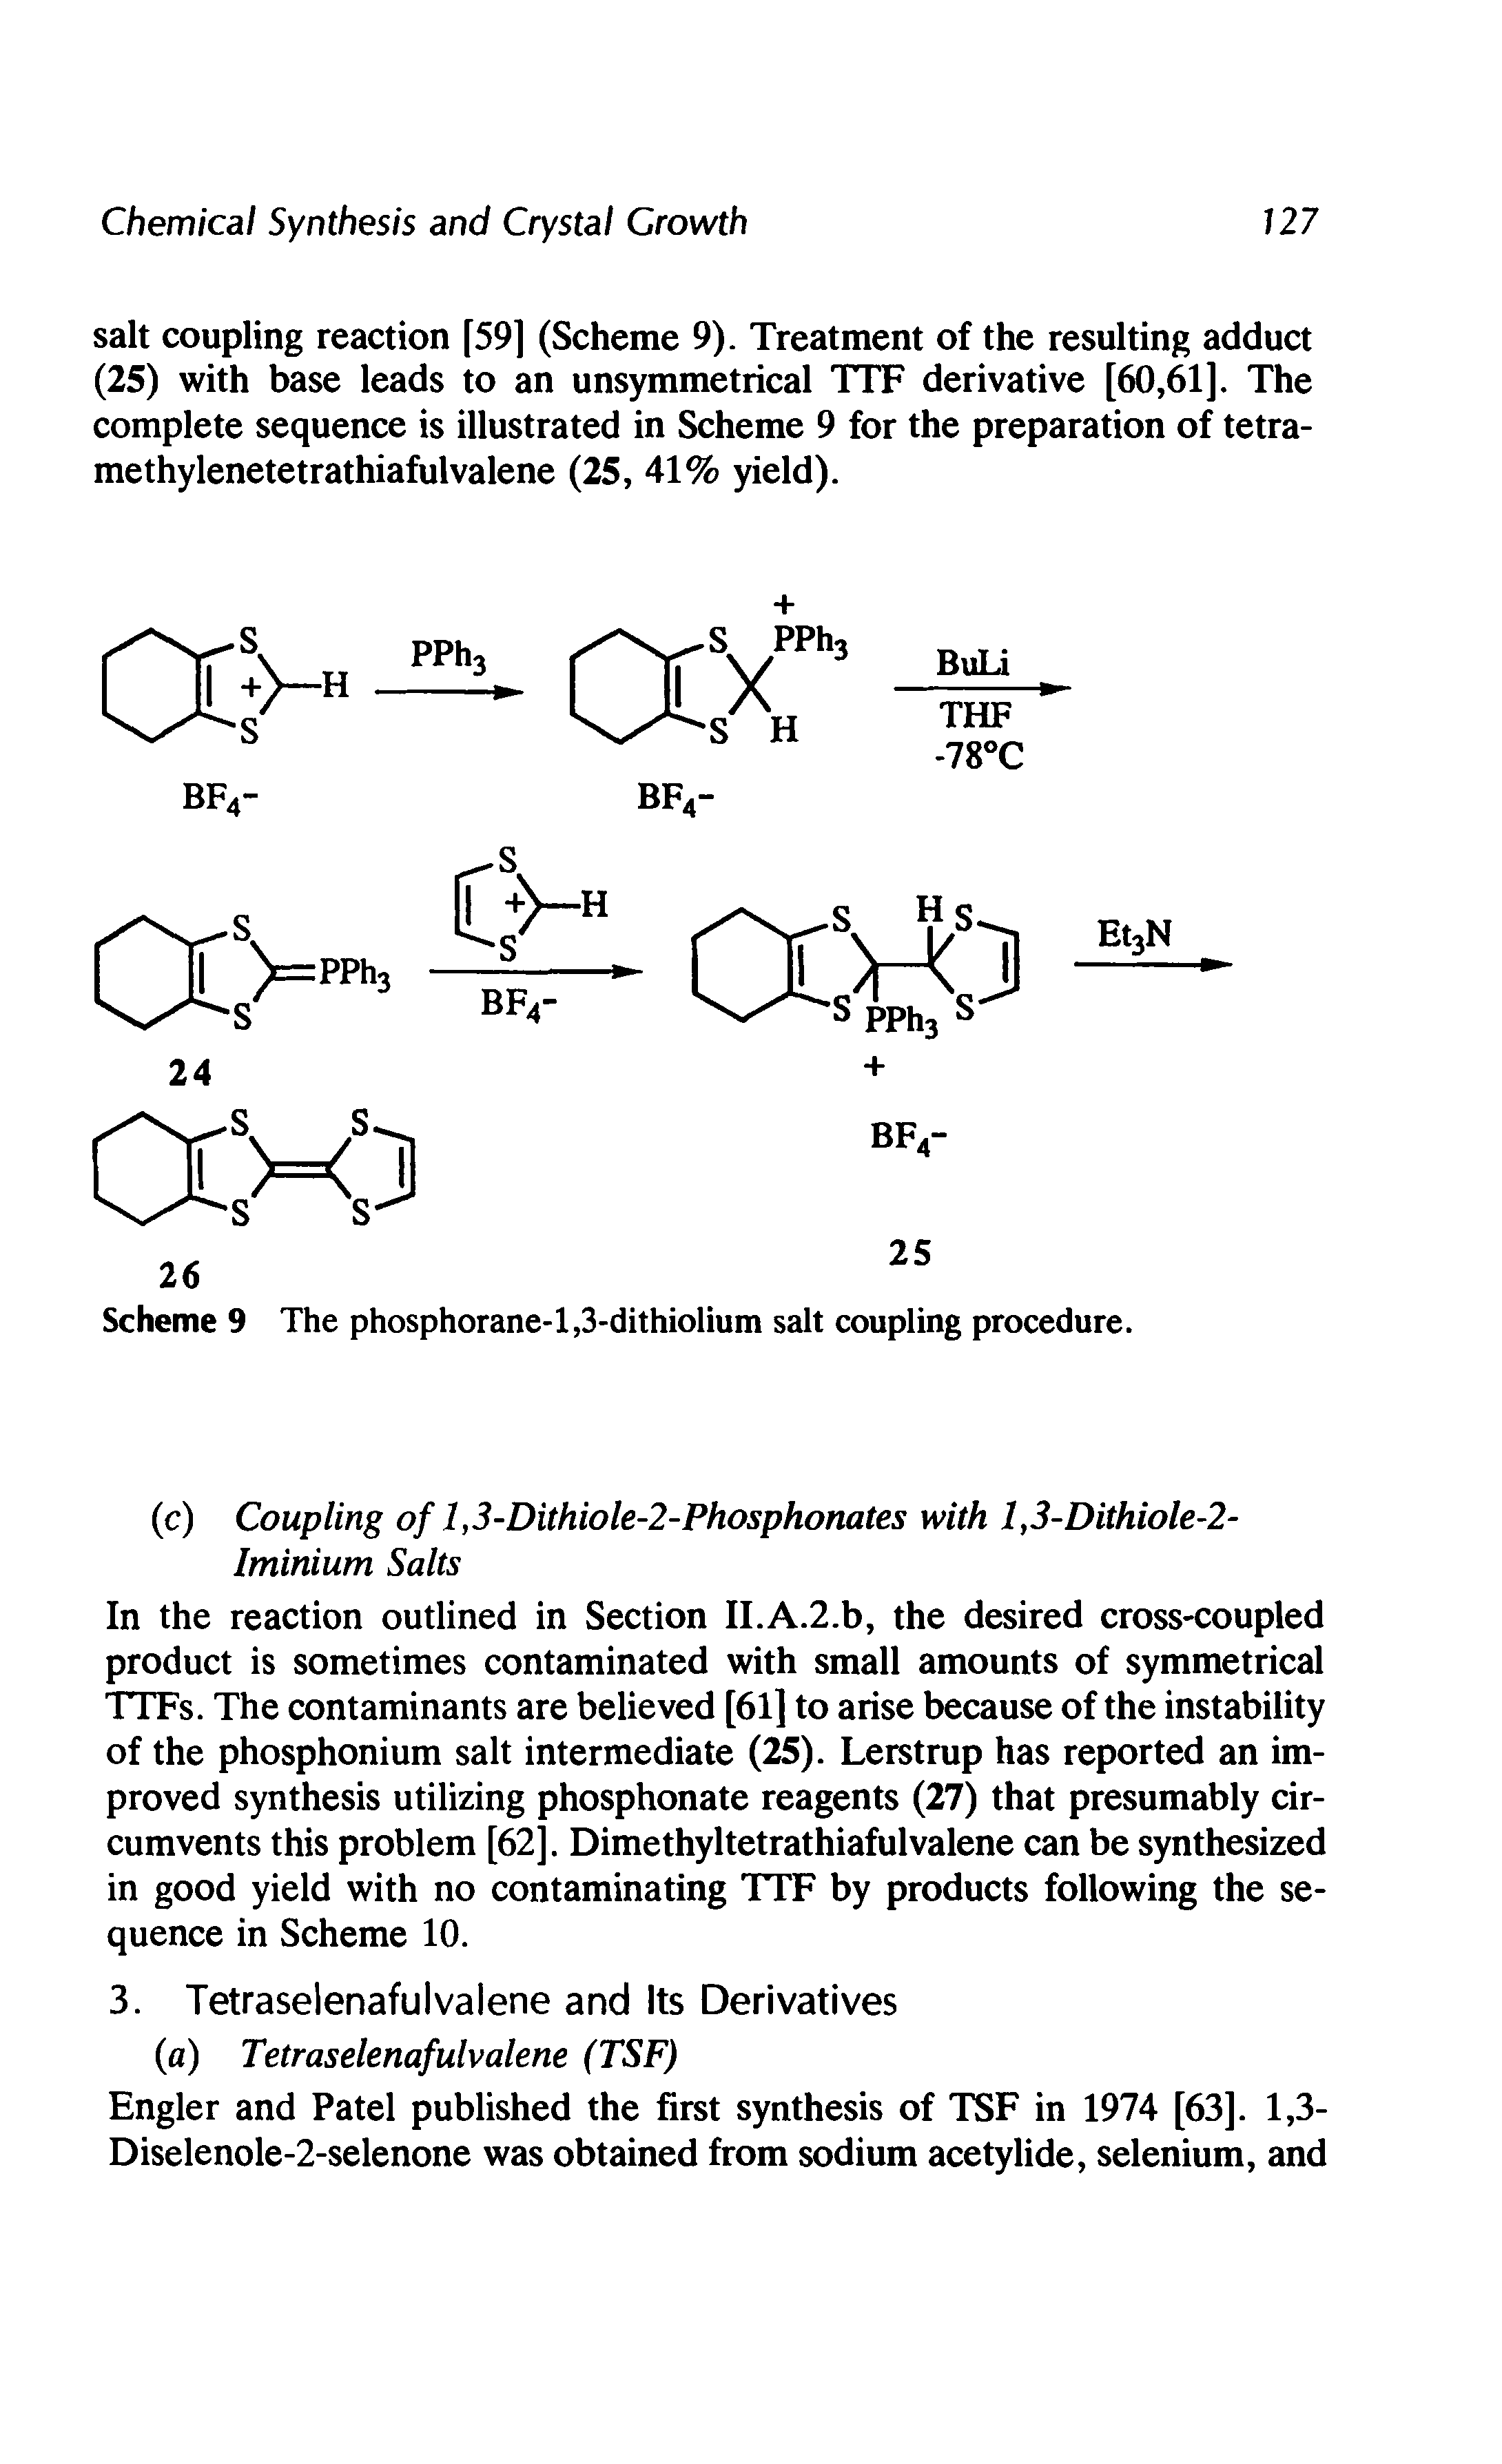 Scheme 9 The phosphorane-l,3-dithiolium salt coupling procedure.